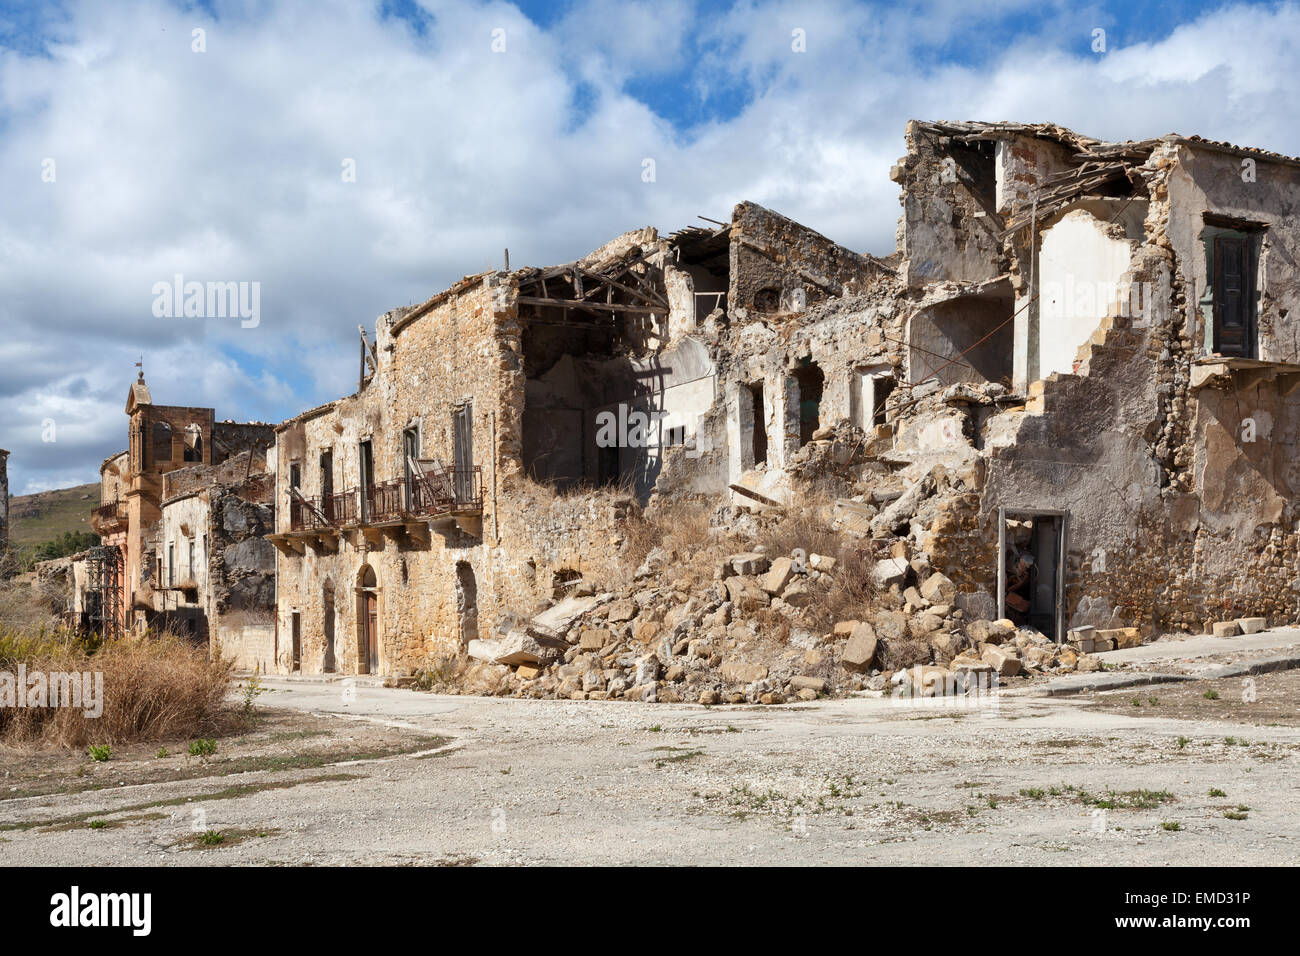 Edifici crollati dopo un terremoto Foto Stock